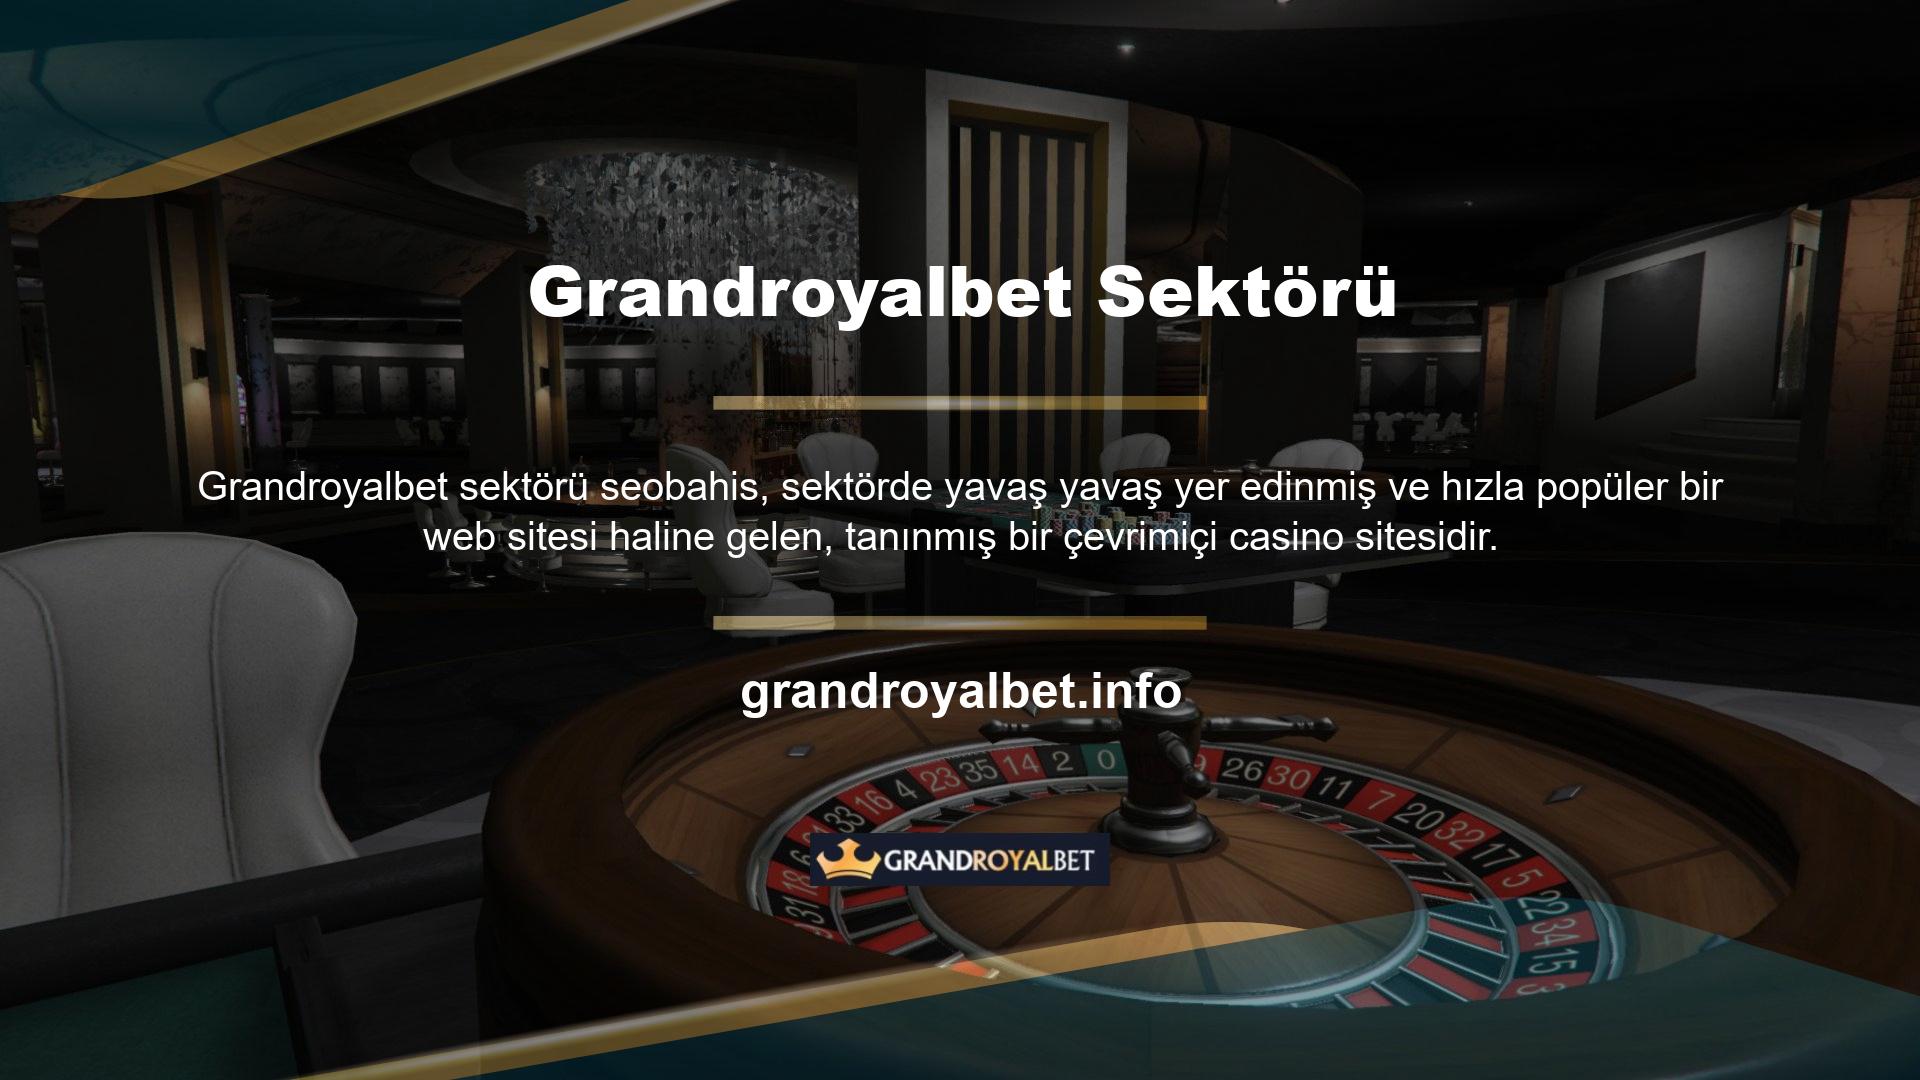 Grandroyalbet Türkiye pazarına hızlı girişi, ekibin Avrupa pazarındaki deneyimine ve başarısına dayanmaktadır